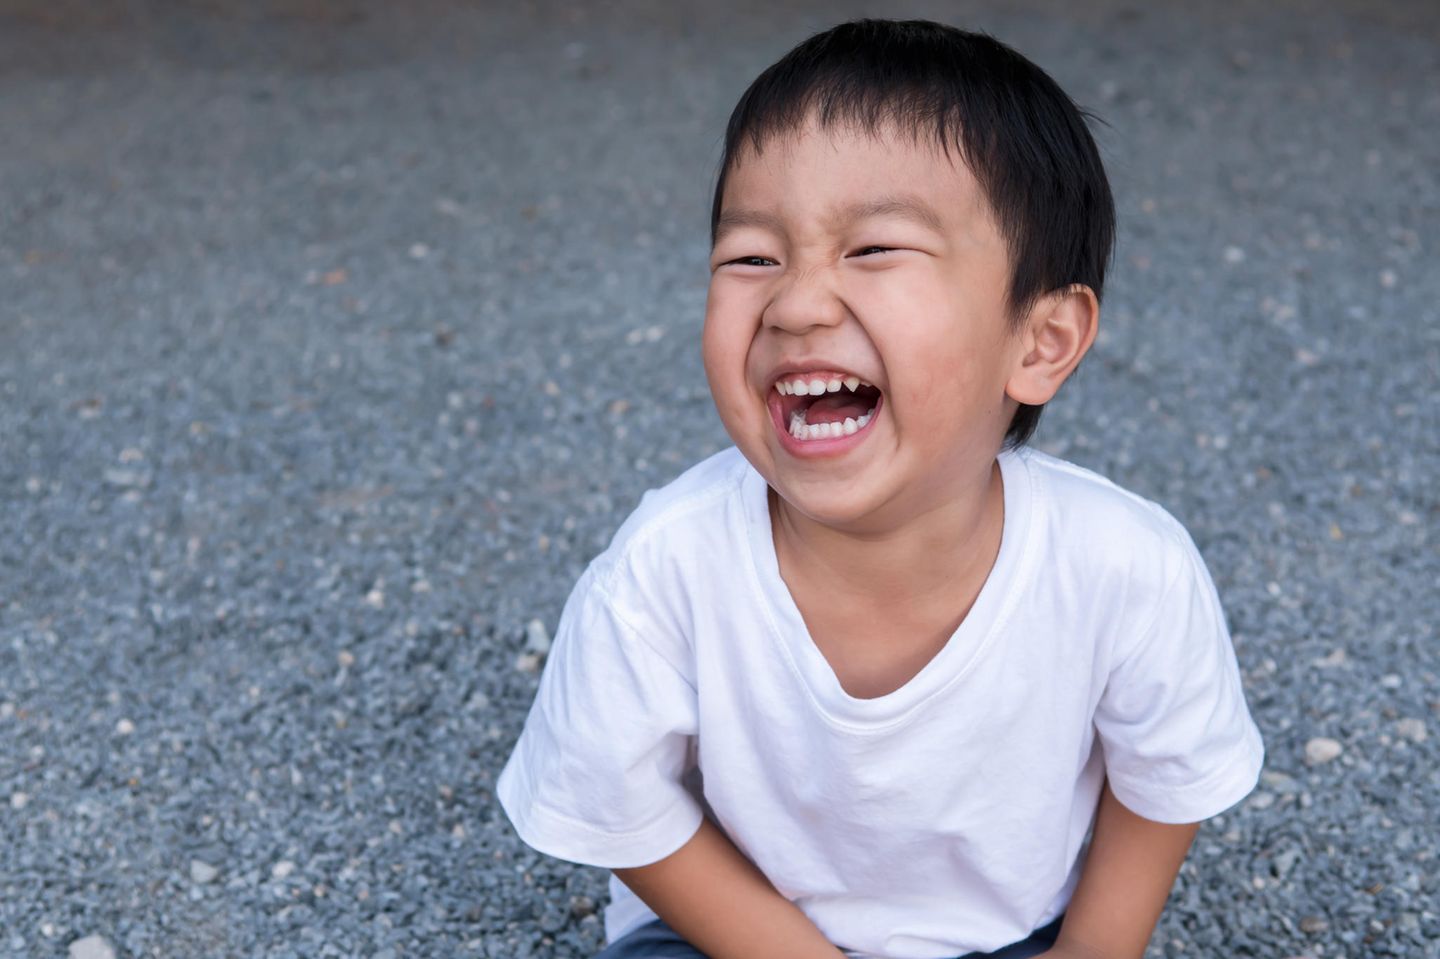 Peinliche Eltern-Momente: Junge lacht